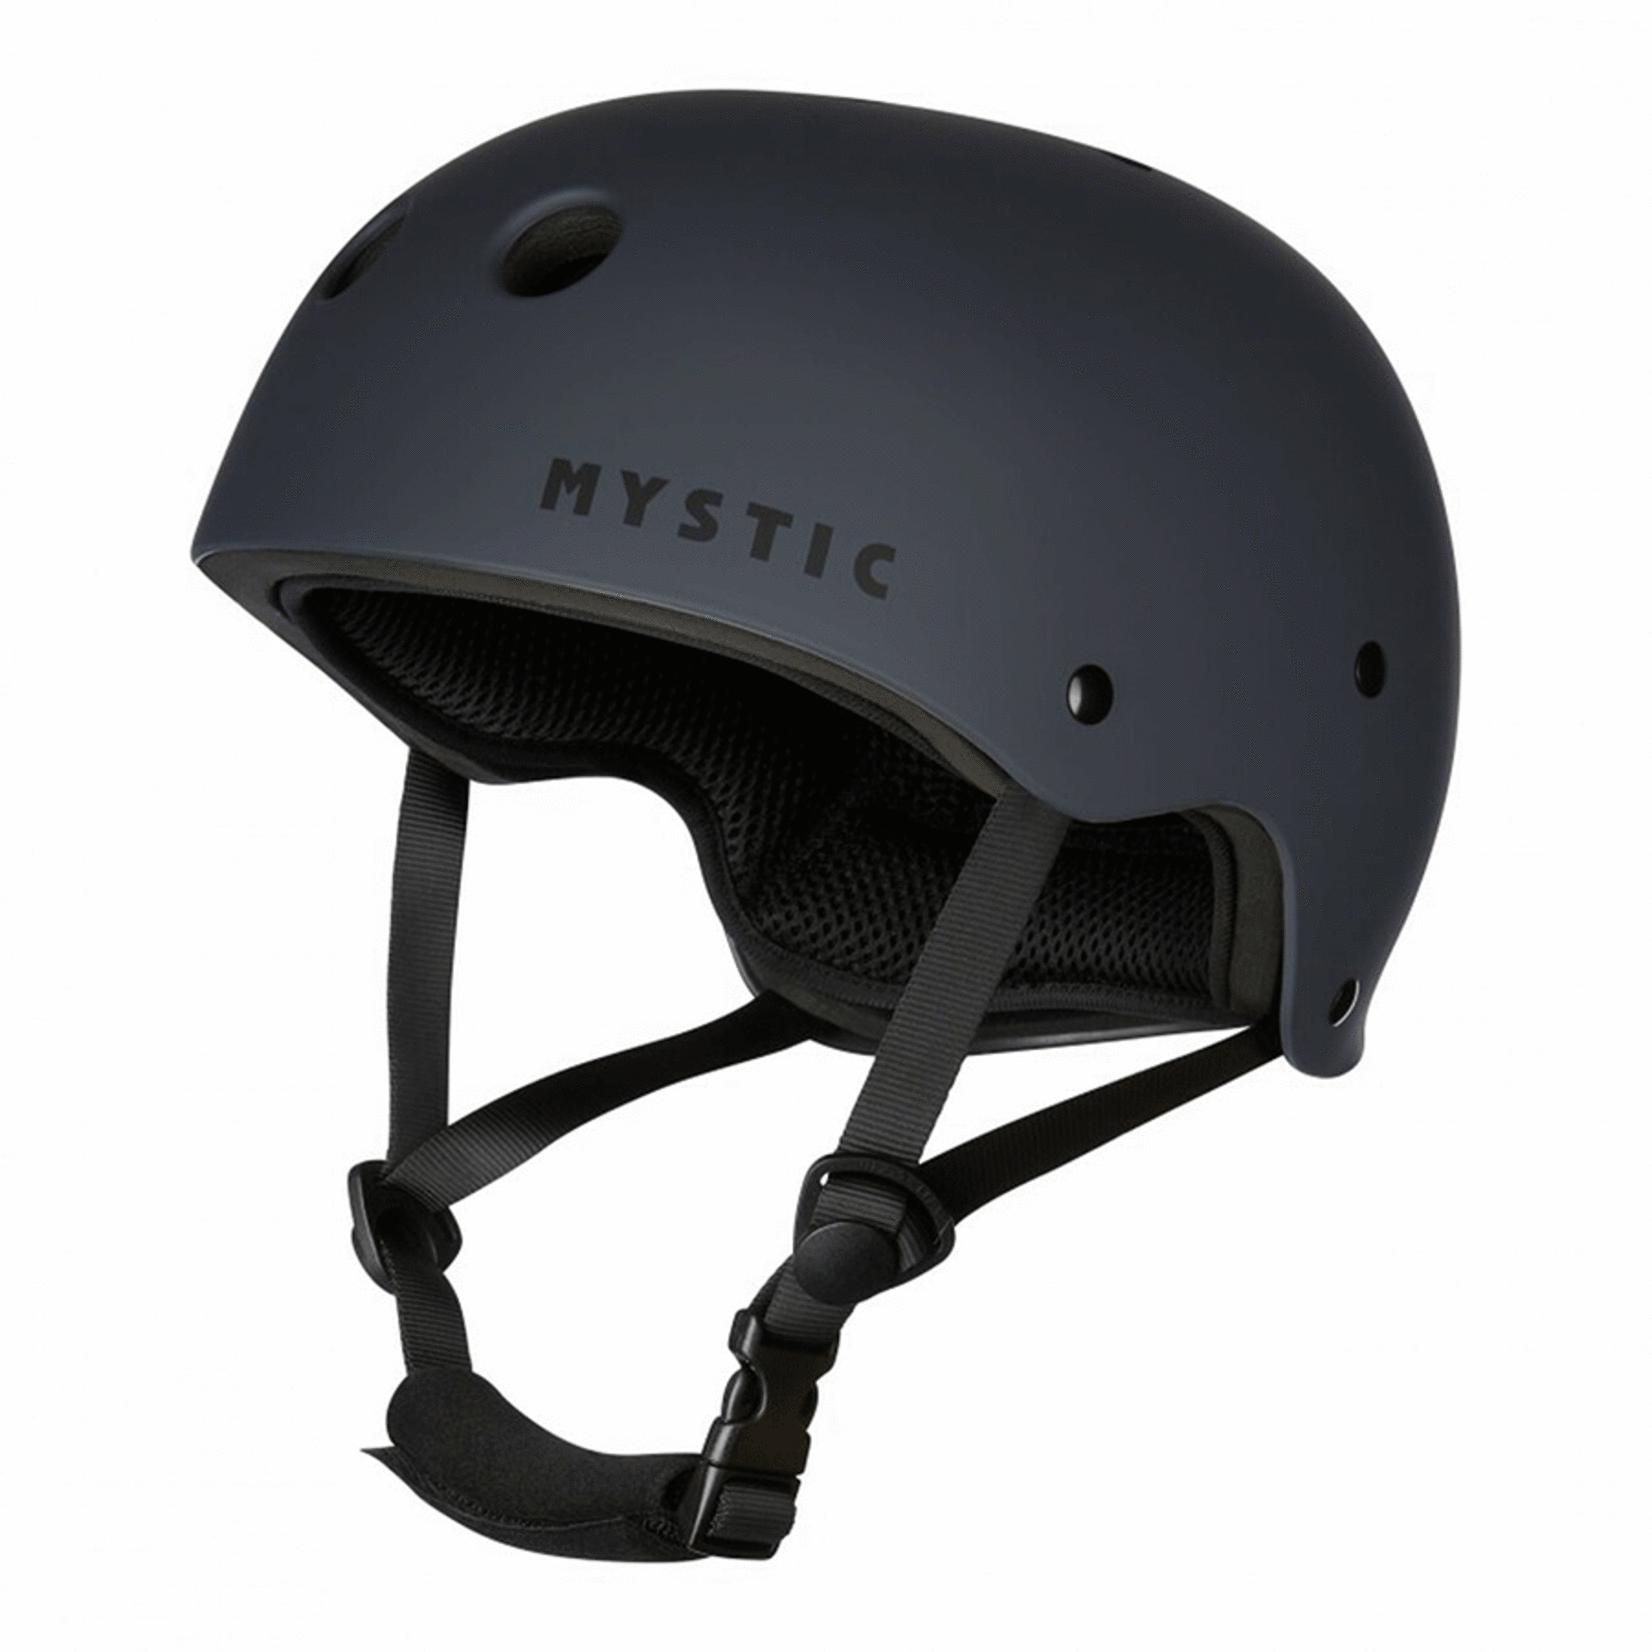 Mystic MK8 water helmet